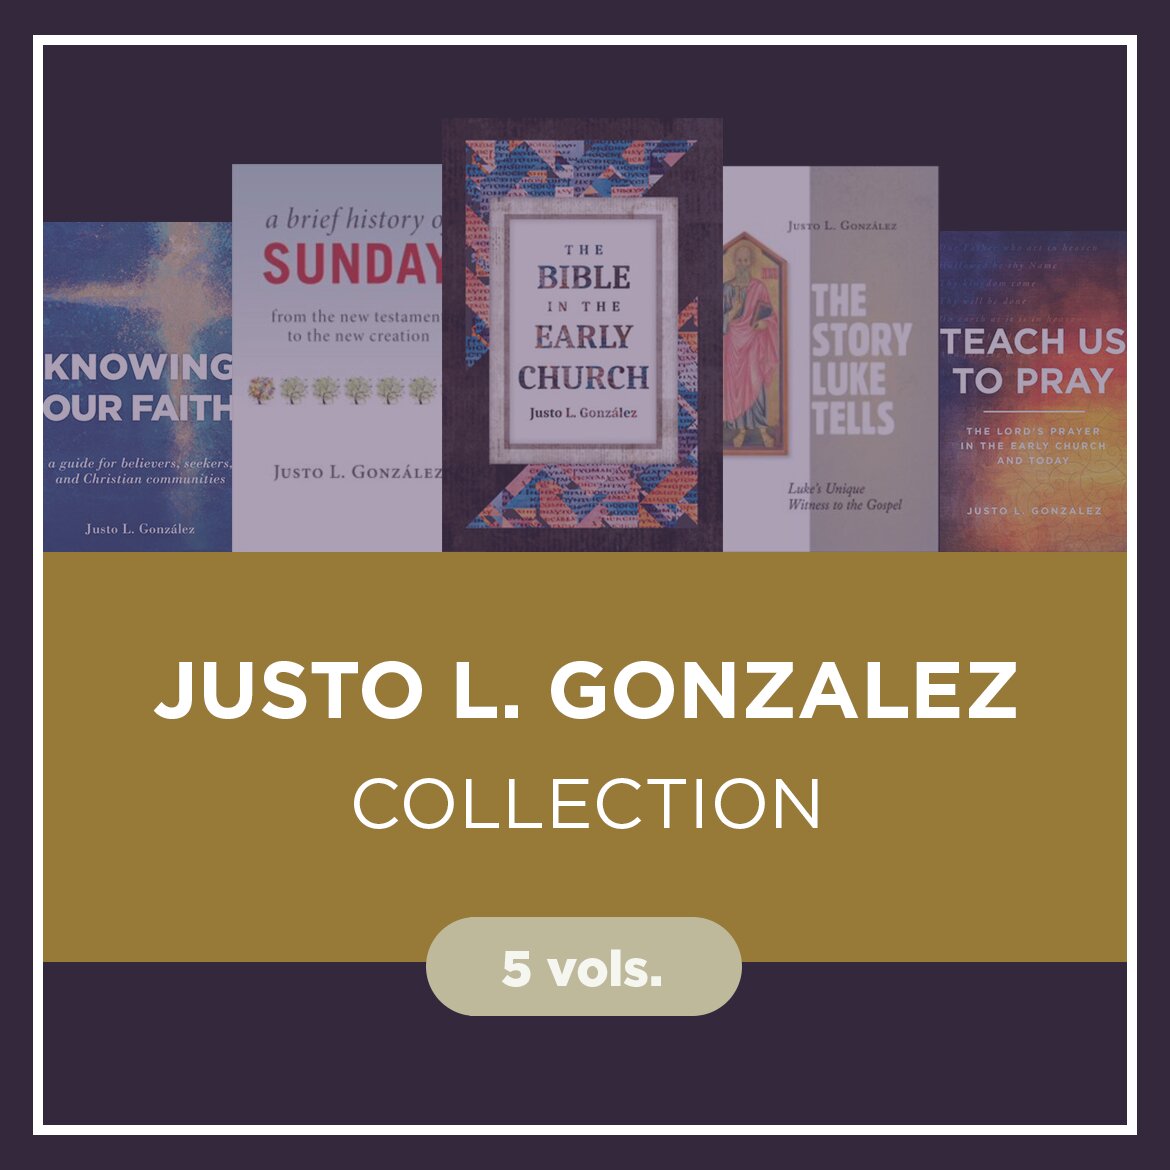 Justo L. Gonzalez Collection (5 vols.)